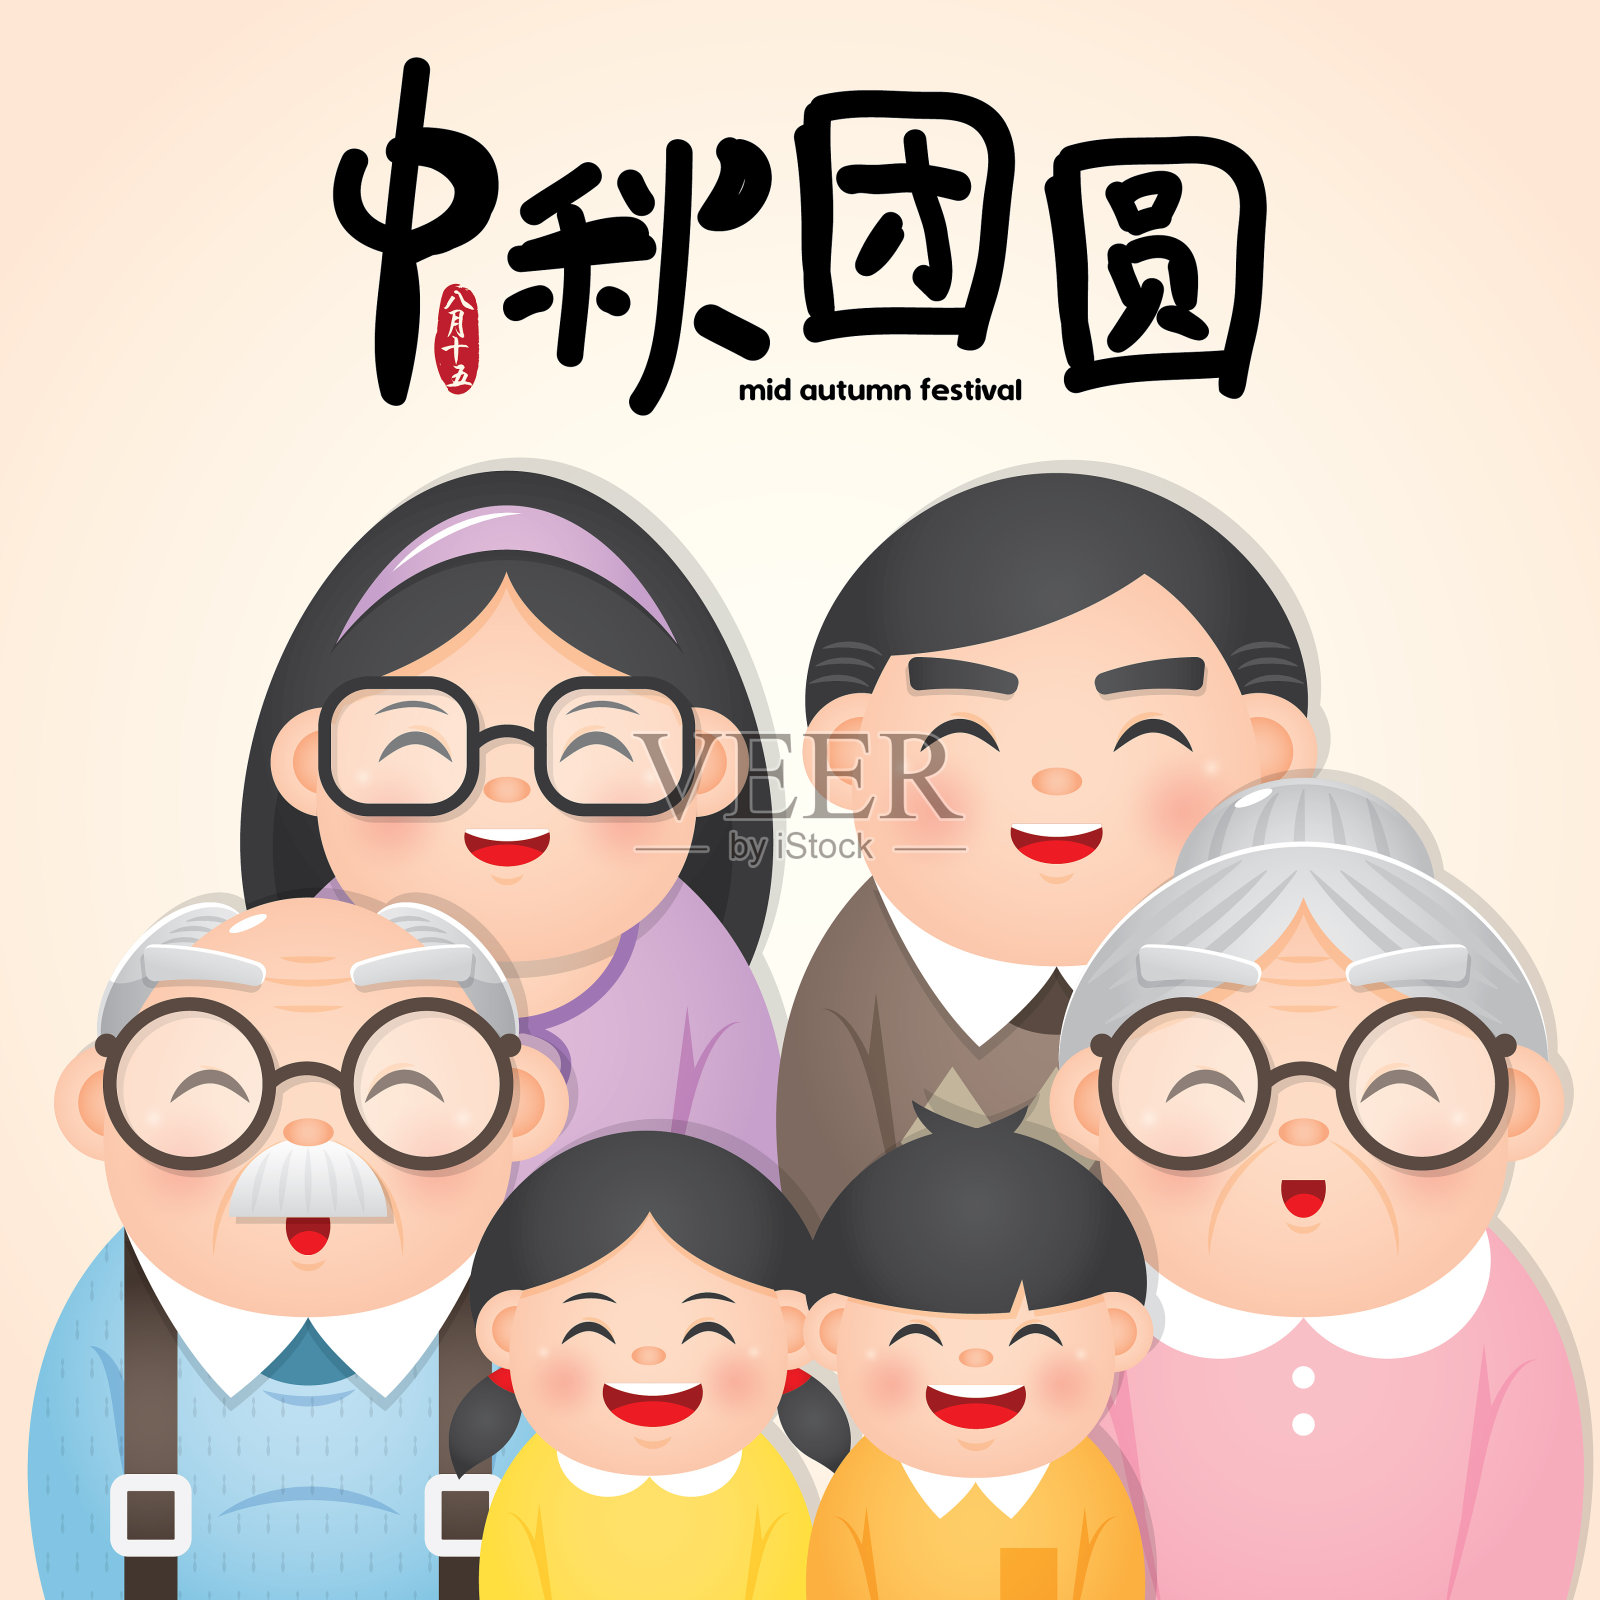 中秋节或中秋节插画与幸福的家庭。说明:8月15日;快乐的中秋团圆设计模板素材